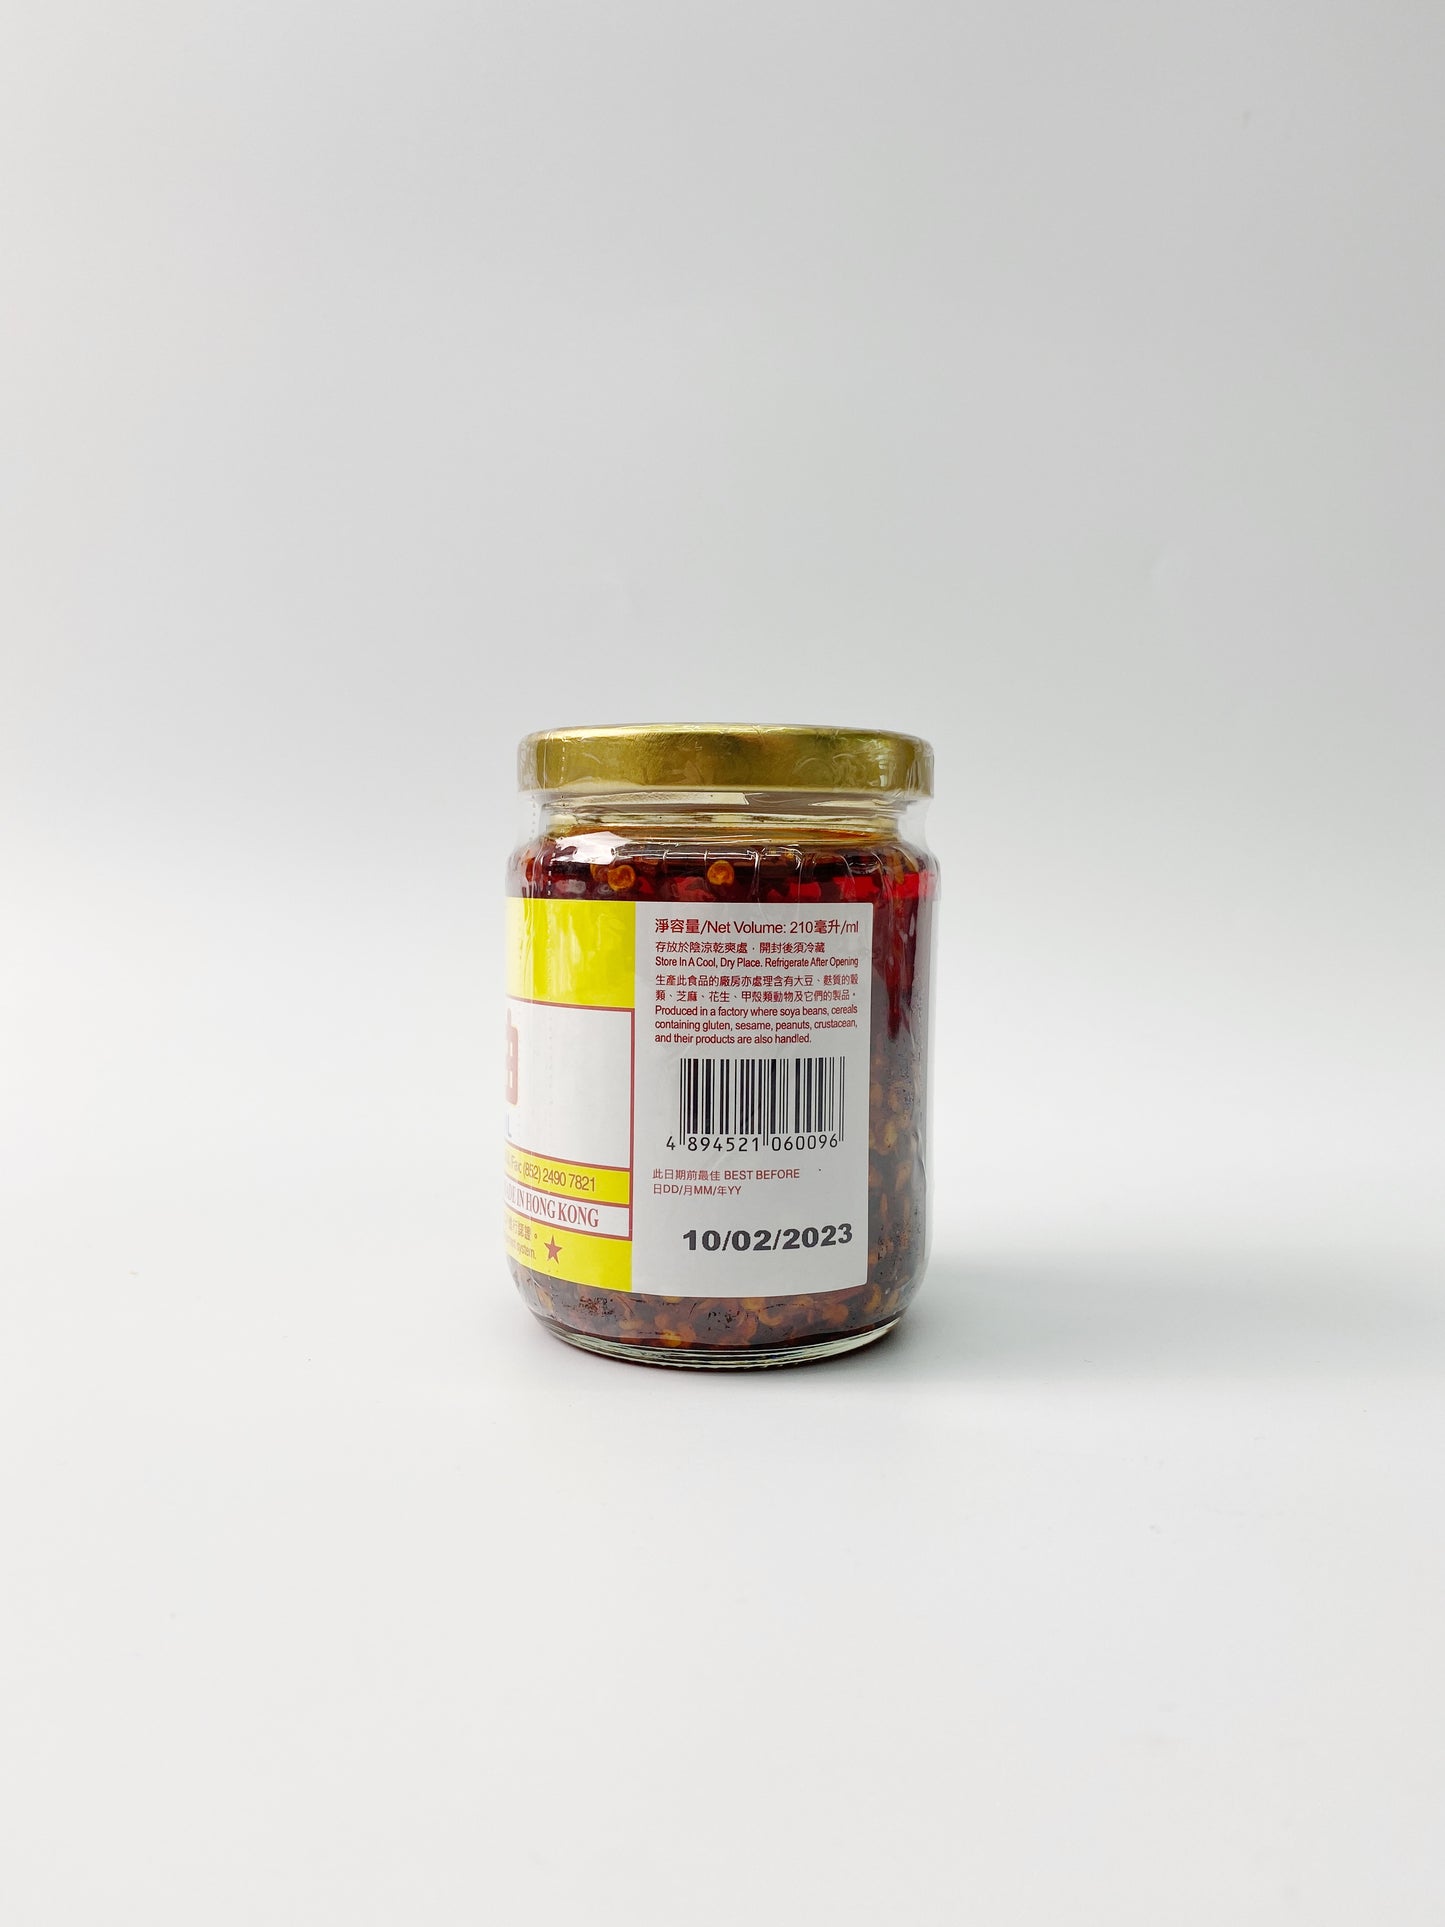 悅和醬園潮式椒油 | Yuet Wo Chao Shi Chilli Sauce (210ml)